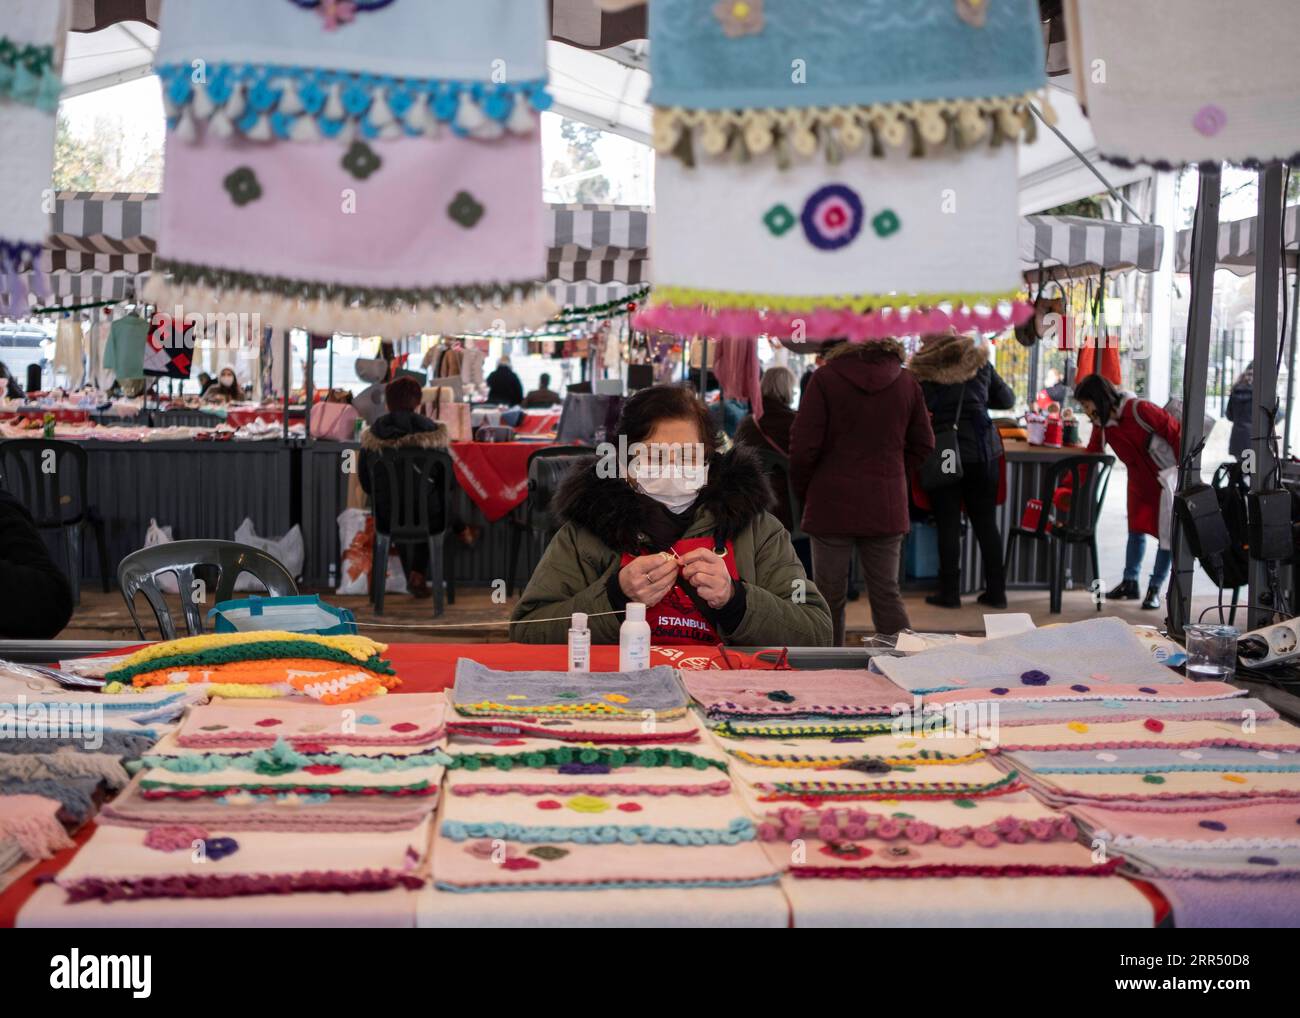 201217 -- ISTANBUL, 17 dicembre 2020 -- Una donna vende oggetti d'artigianato in un bazar a Istanbul, Turchia, il 17 dicembre 2020. Il bazar presso un molo nel quartiere Besiktas di Istanbul è pieno di saponi fatti a mano, giocattoli, pezzi a maglia, oggetti in porcellana e gioielli, tutti prodotti a casa da donne locali. Nell'ambito di un progetto avviato per sostenere l'imprenditorialità femminile, circa 500 donne hanno recentemente iniziato a vendere i loro prodotti al bazar che è stato dato il via lunedì. Foto di /Xinhua TO GO WITH Feature: Il programma imprenditoriale aiuta le donne turche a vendere prodotti fatti in casa TURCHIA-ISTANBUL-WOMEN ENTREPRENEURSHIP OsmanxOr Foto Stock